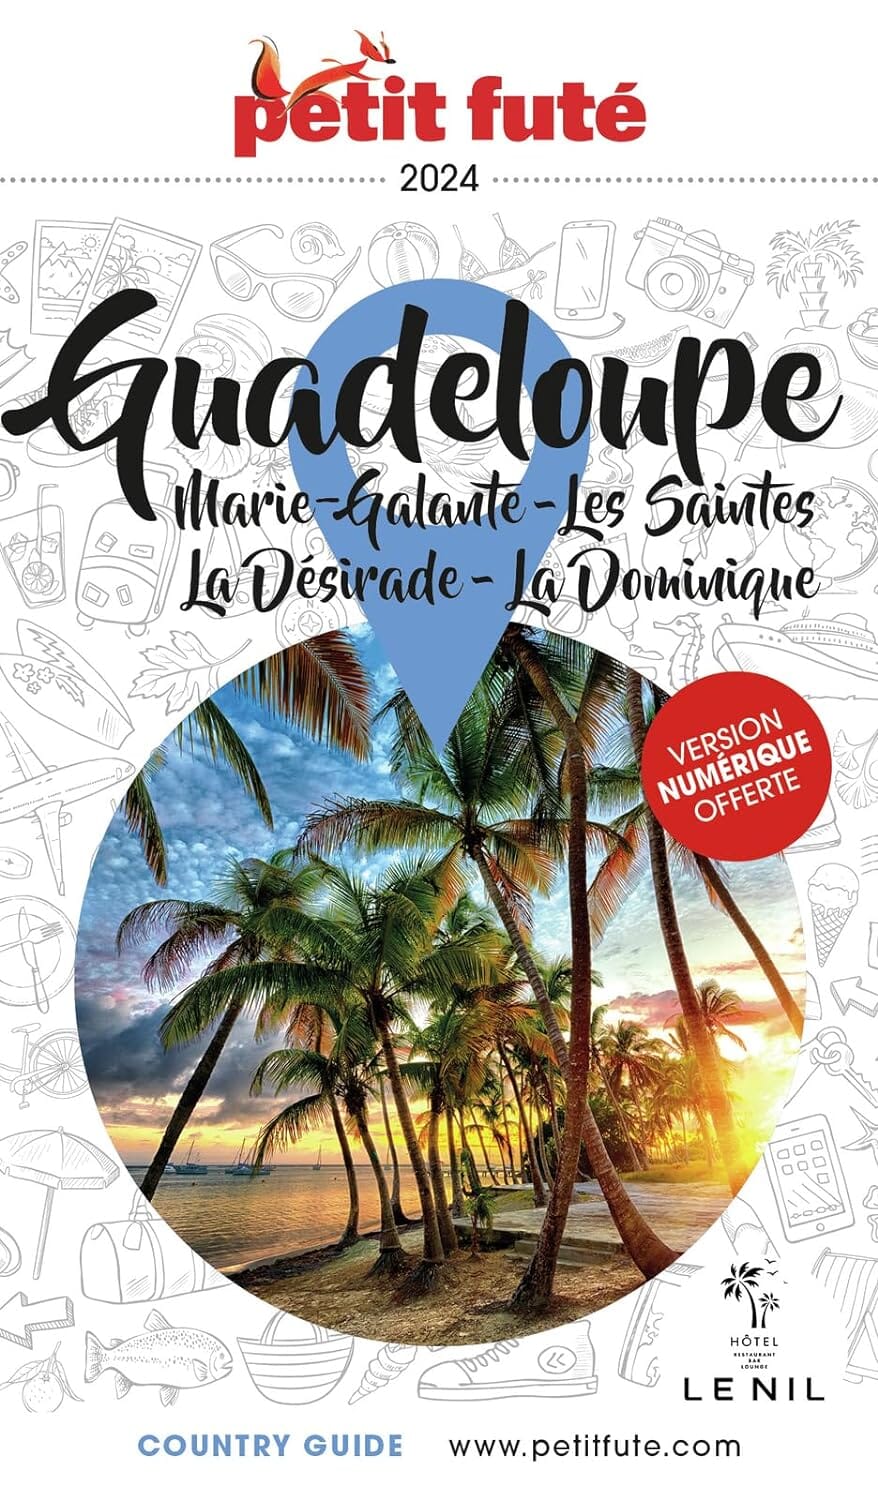 Guide de voyage - Guadeloupe, Les Saintes, Marie-Galante, La Désirade, La Dominique 2024 | Petit Futé guide de voyage Petit Futé 